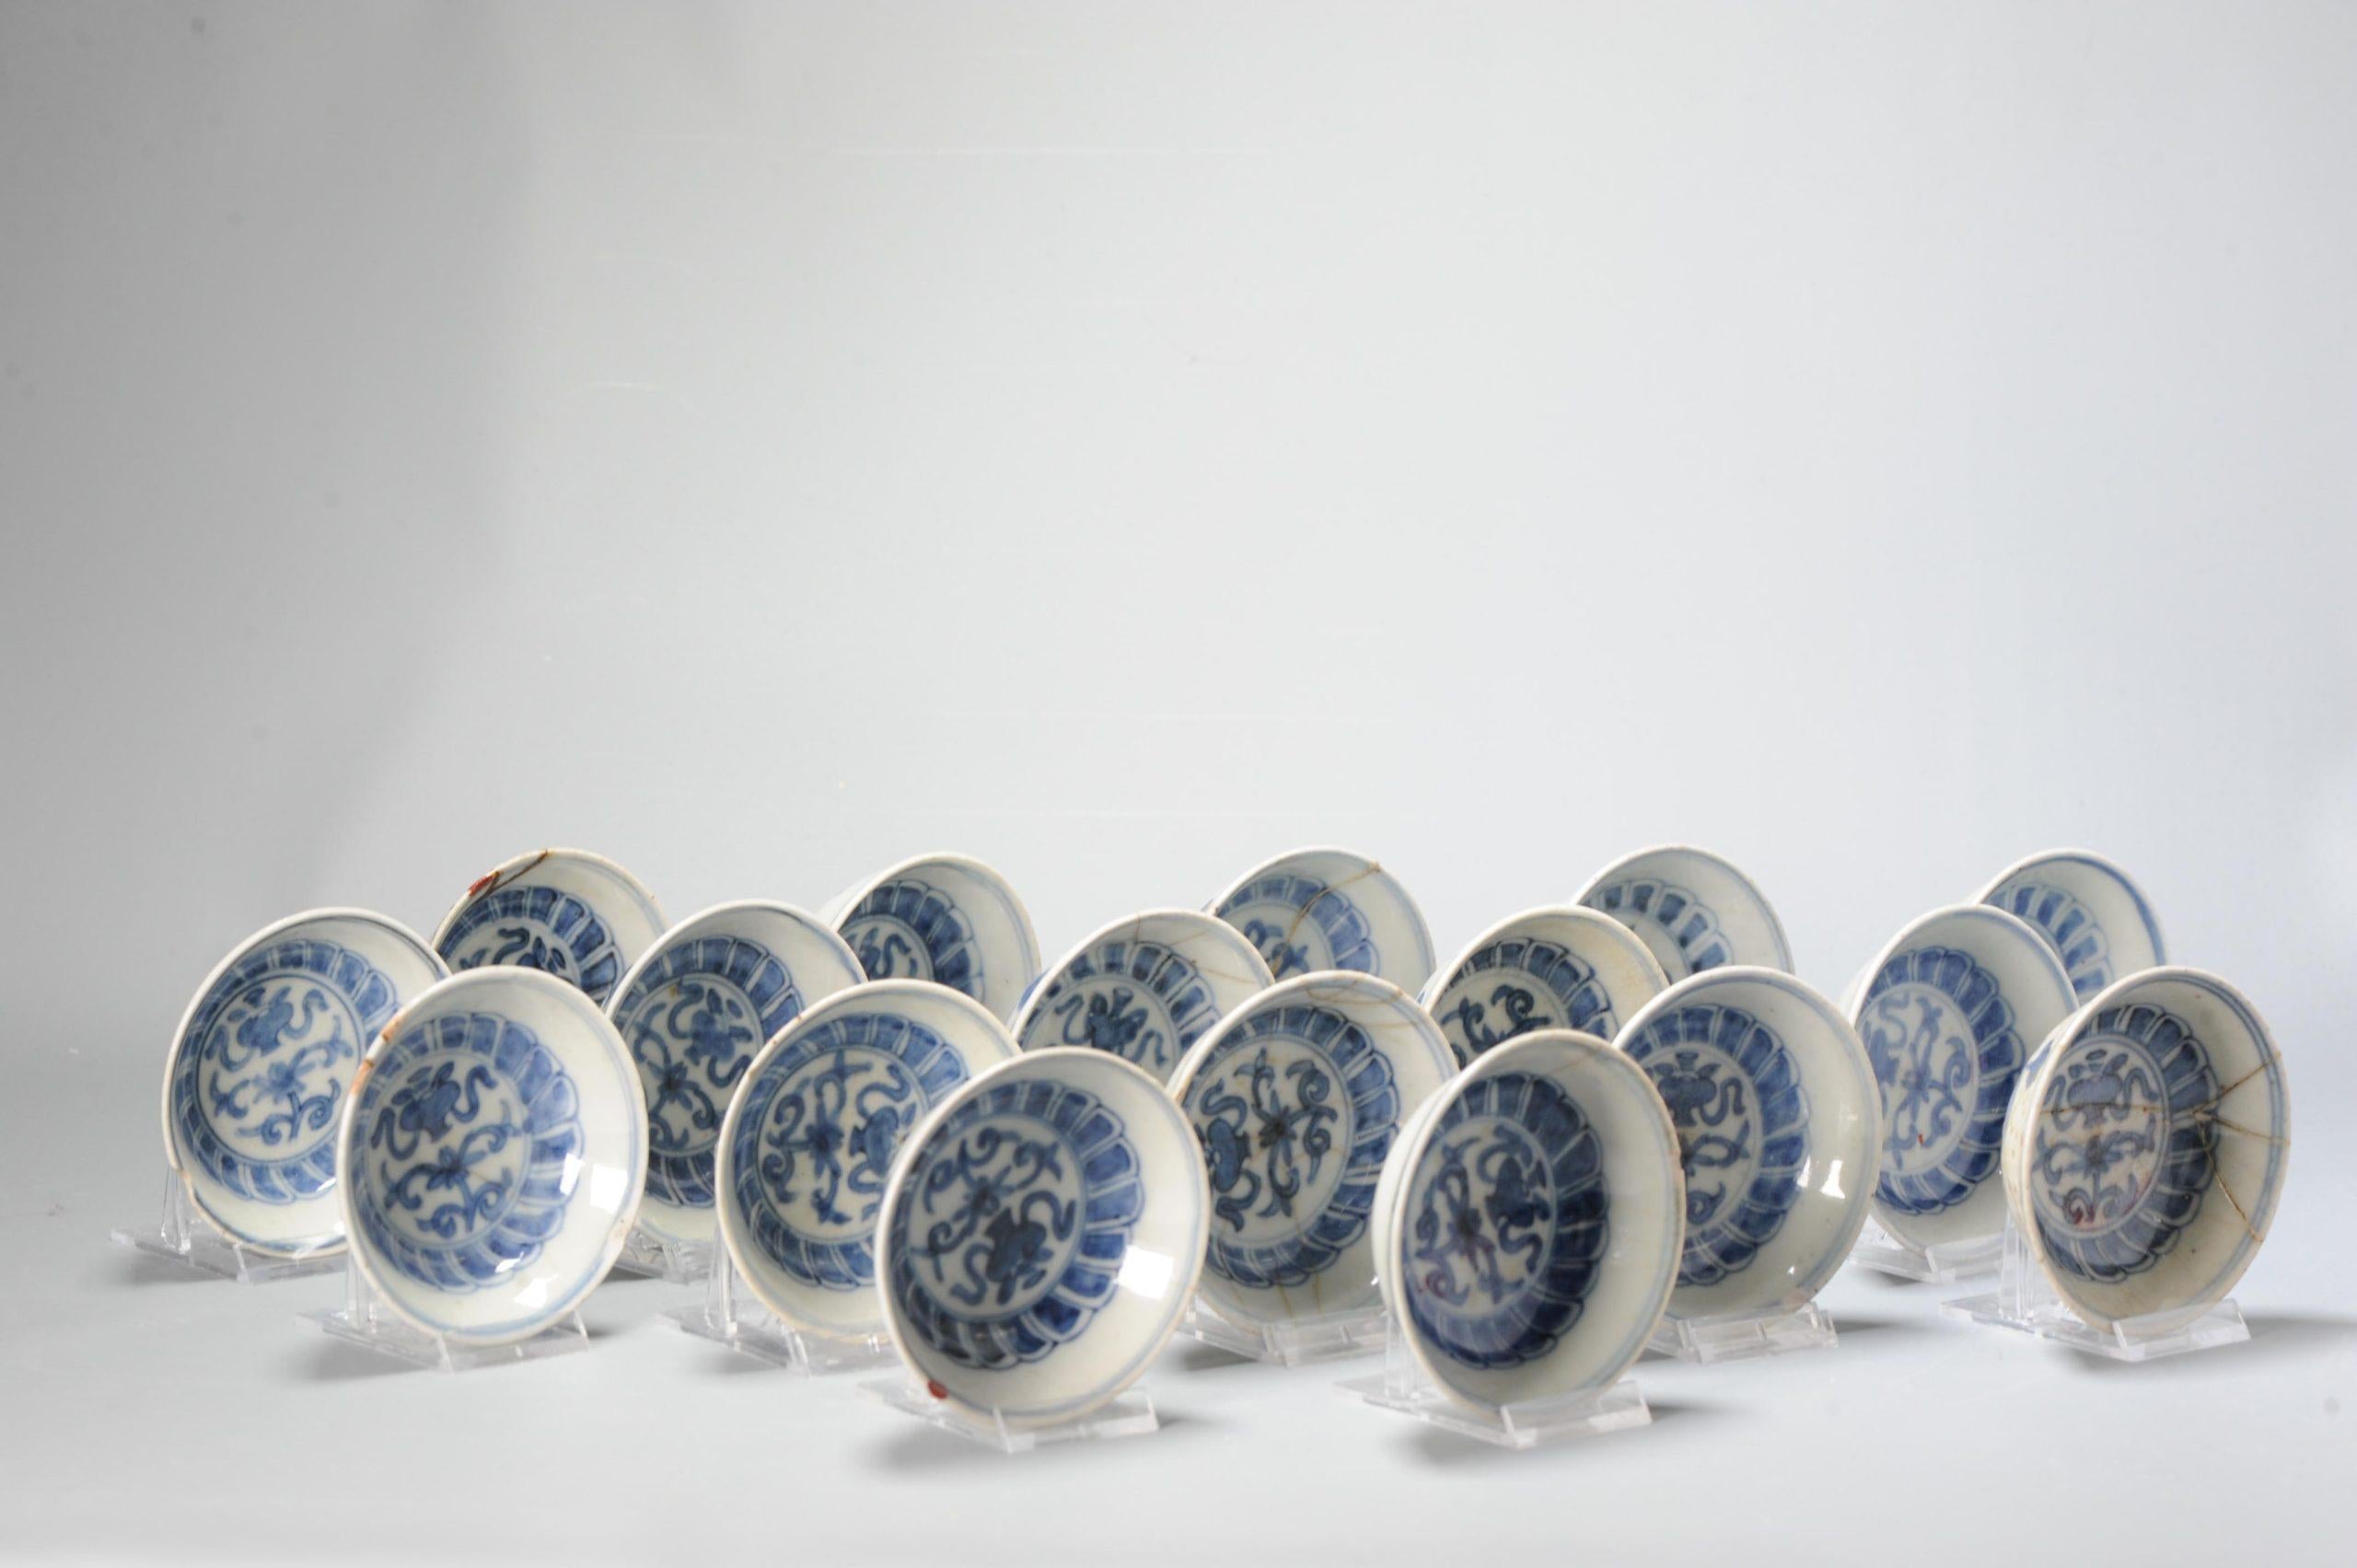 Grand ensemble de petits plats en porcelaine Ming dans le goût japonais, période Ming tardive, Tianqi ou début Chongzhen vers 1620 - 1630. Ces petits plats en porcelaine de la période de transition ont été fabriqués en Chine, à Jingdezhen, d'après